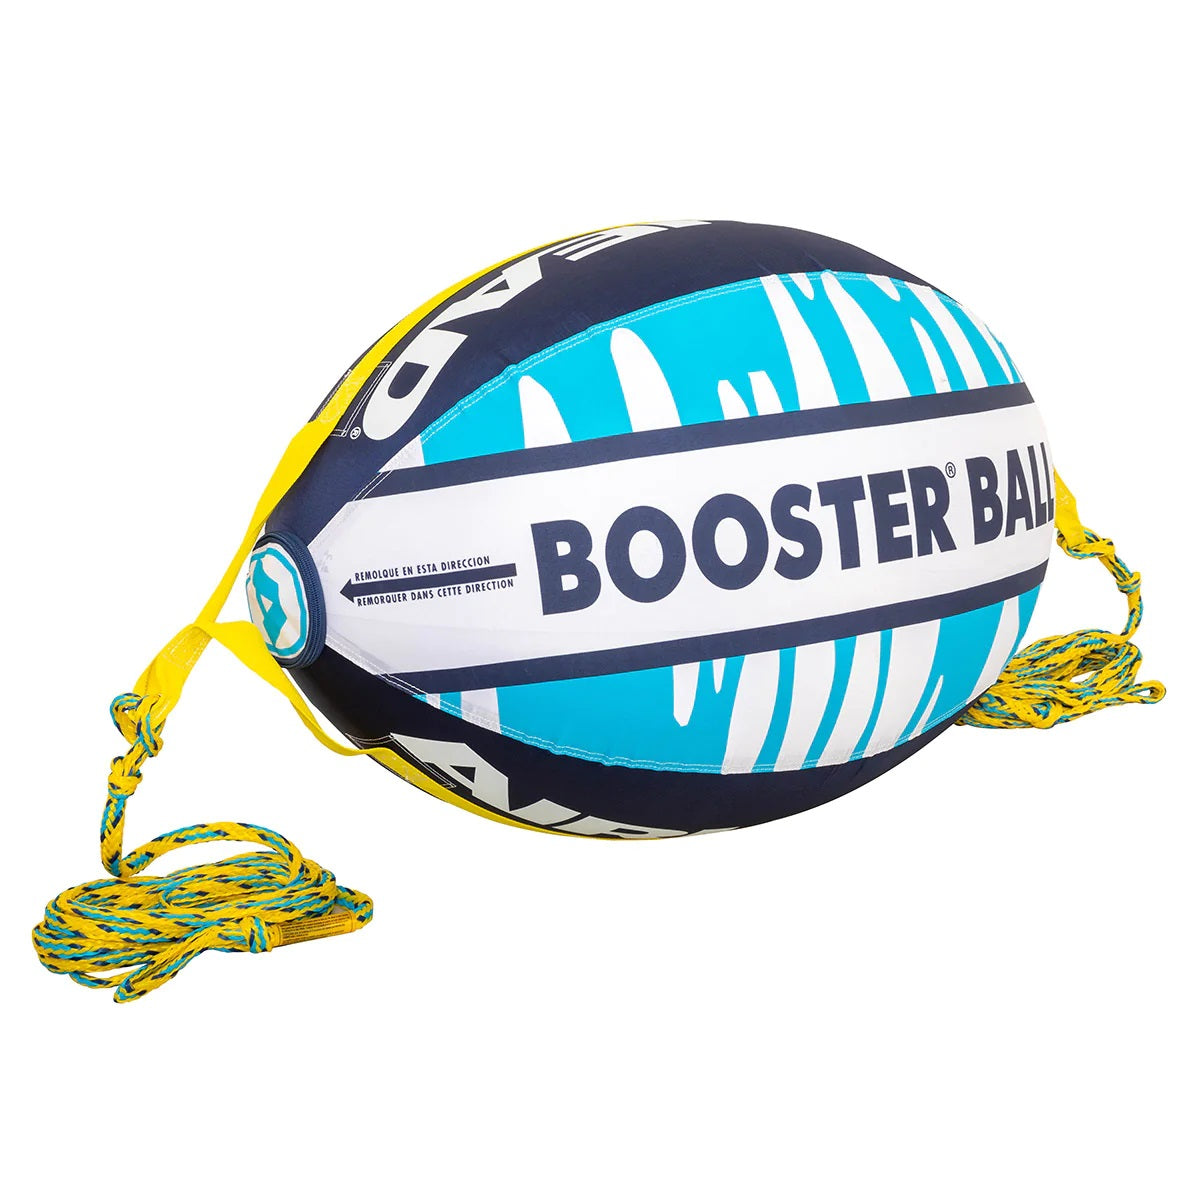 Booster Ball